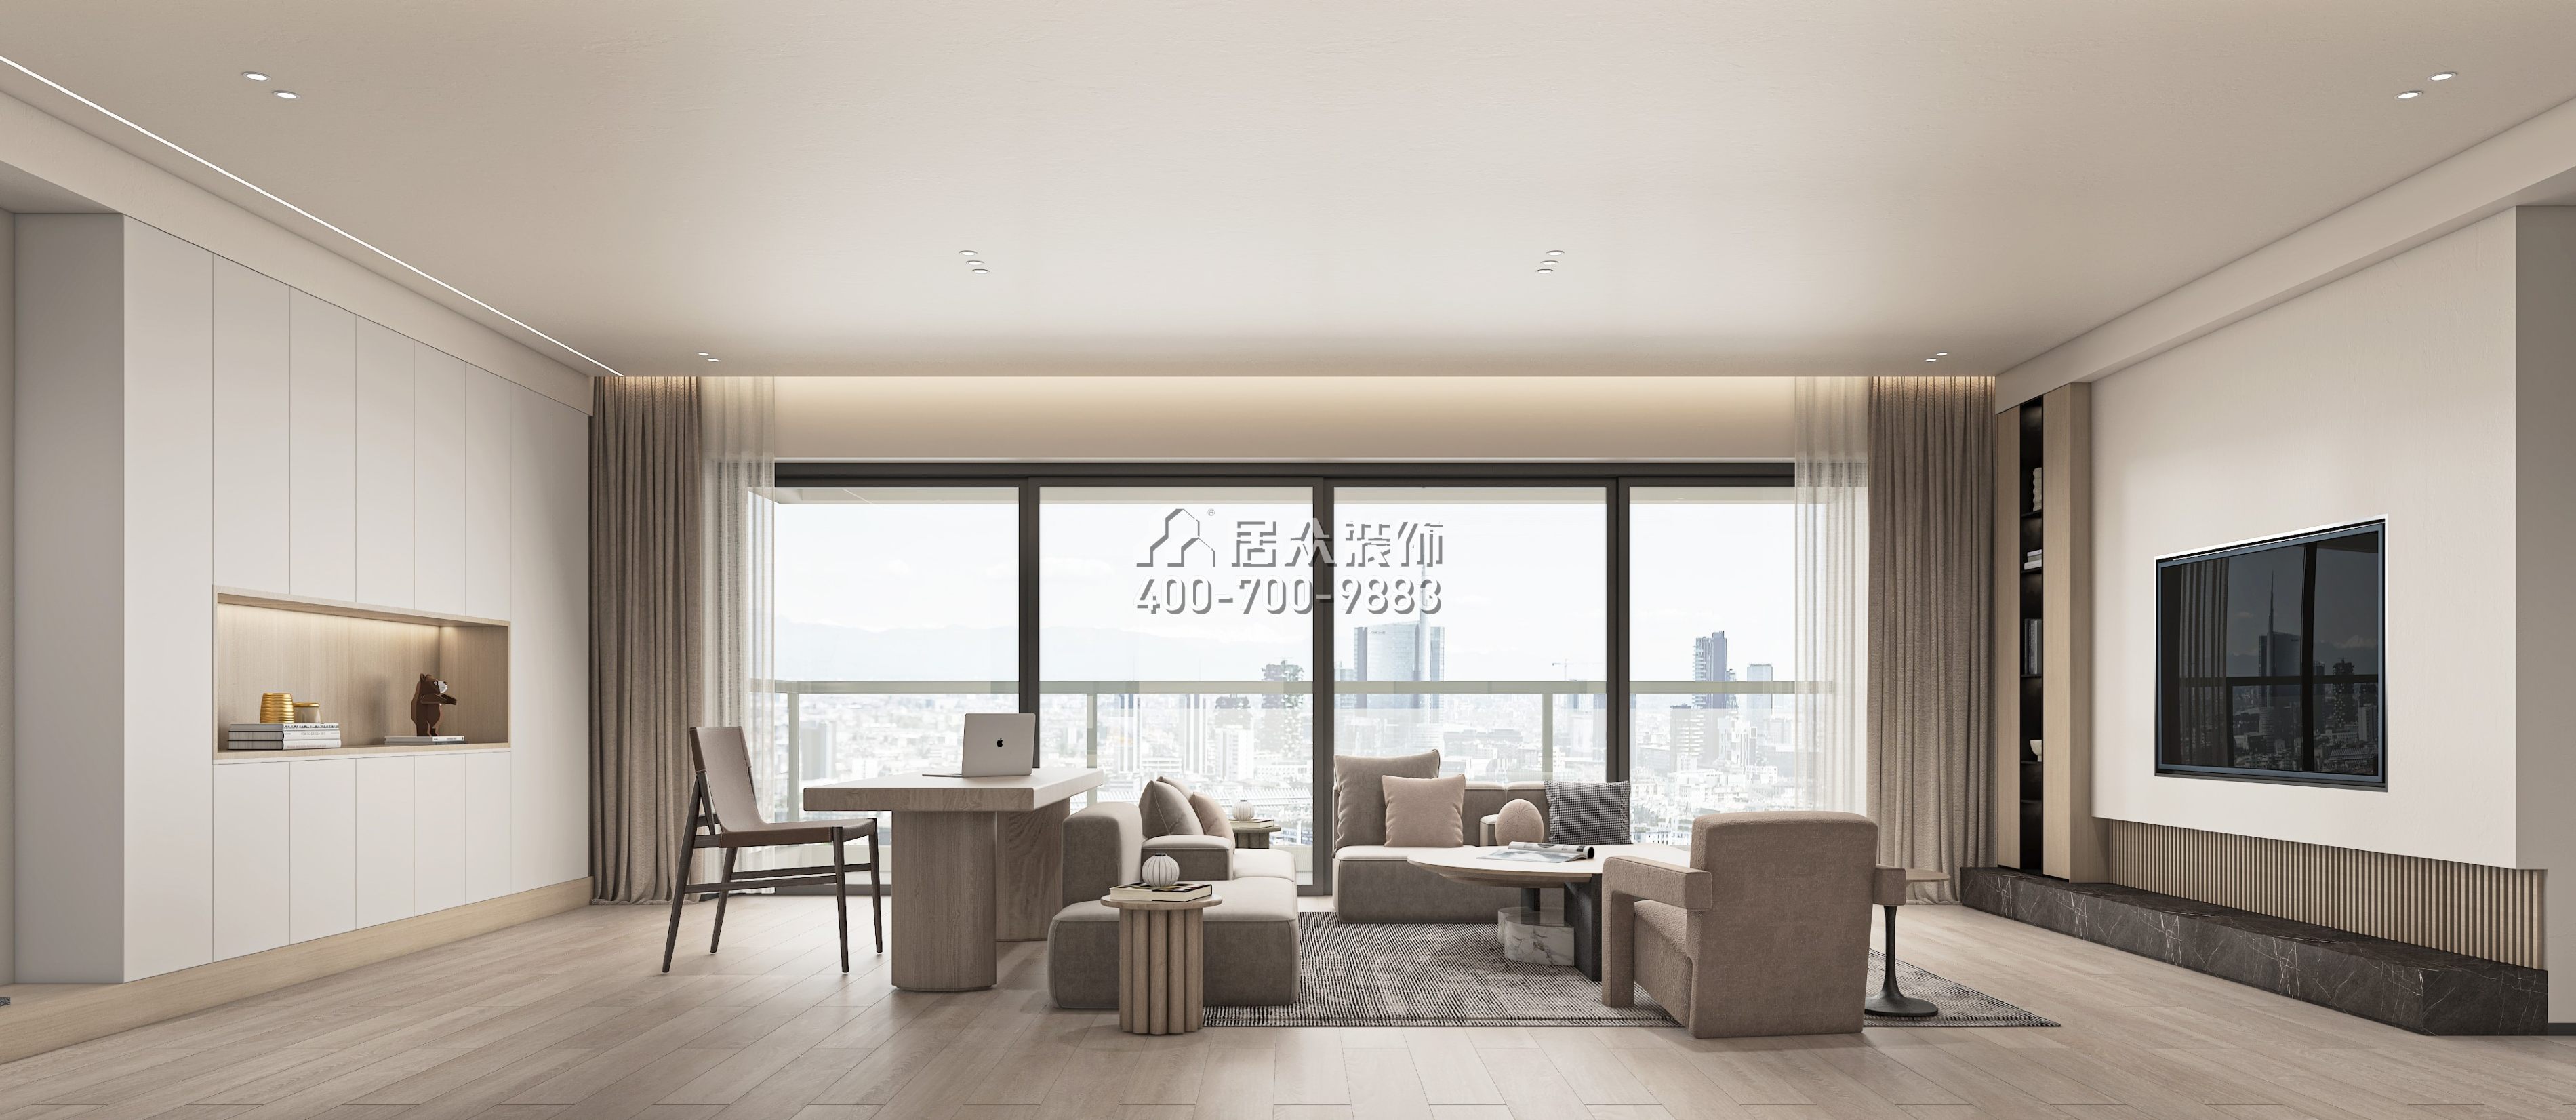 大悦城天悦壹号220平方米现代简约风格平层户型客厅装修效果图